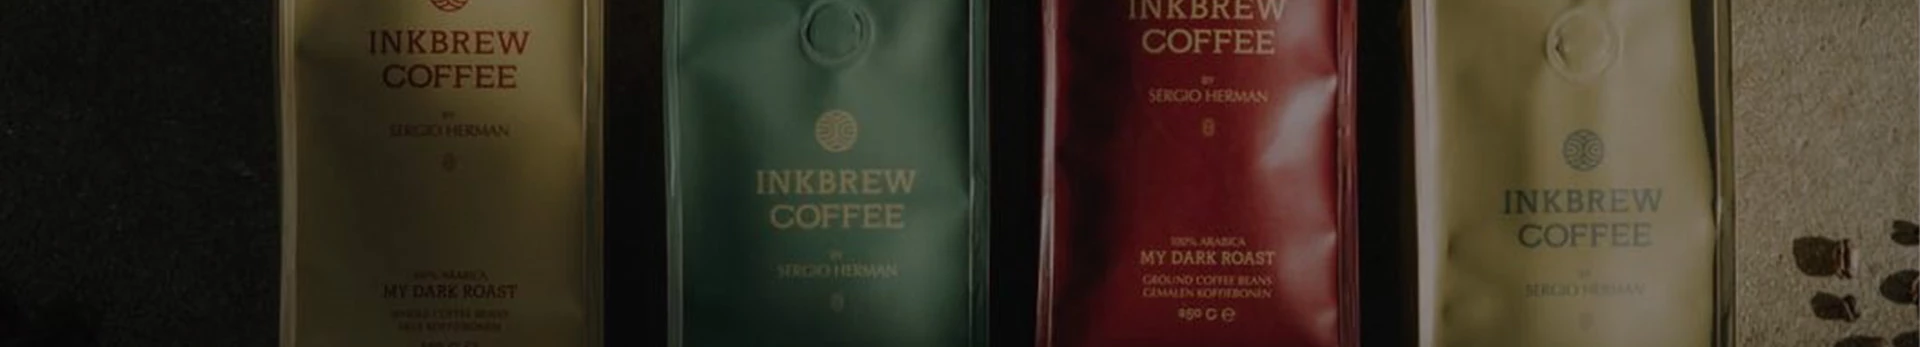 Inkbrew Coffee